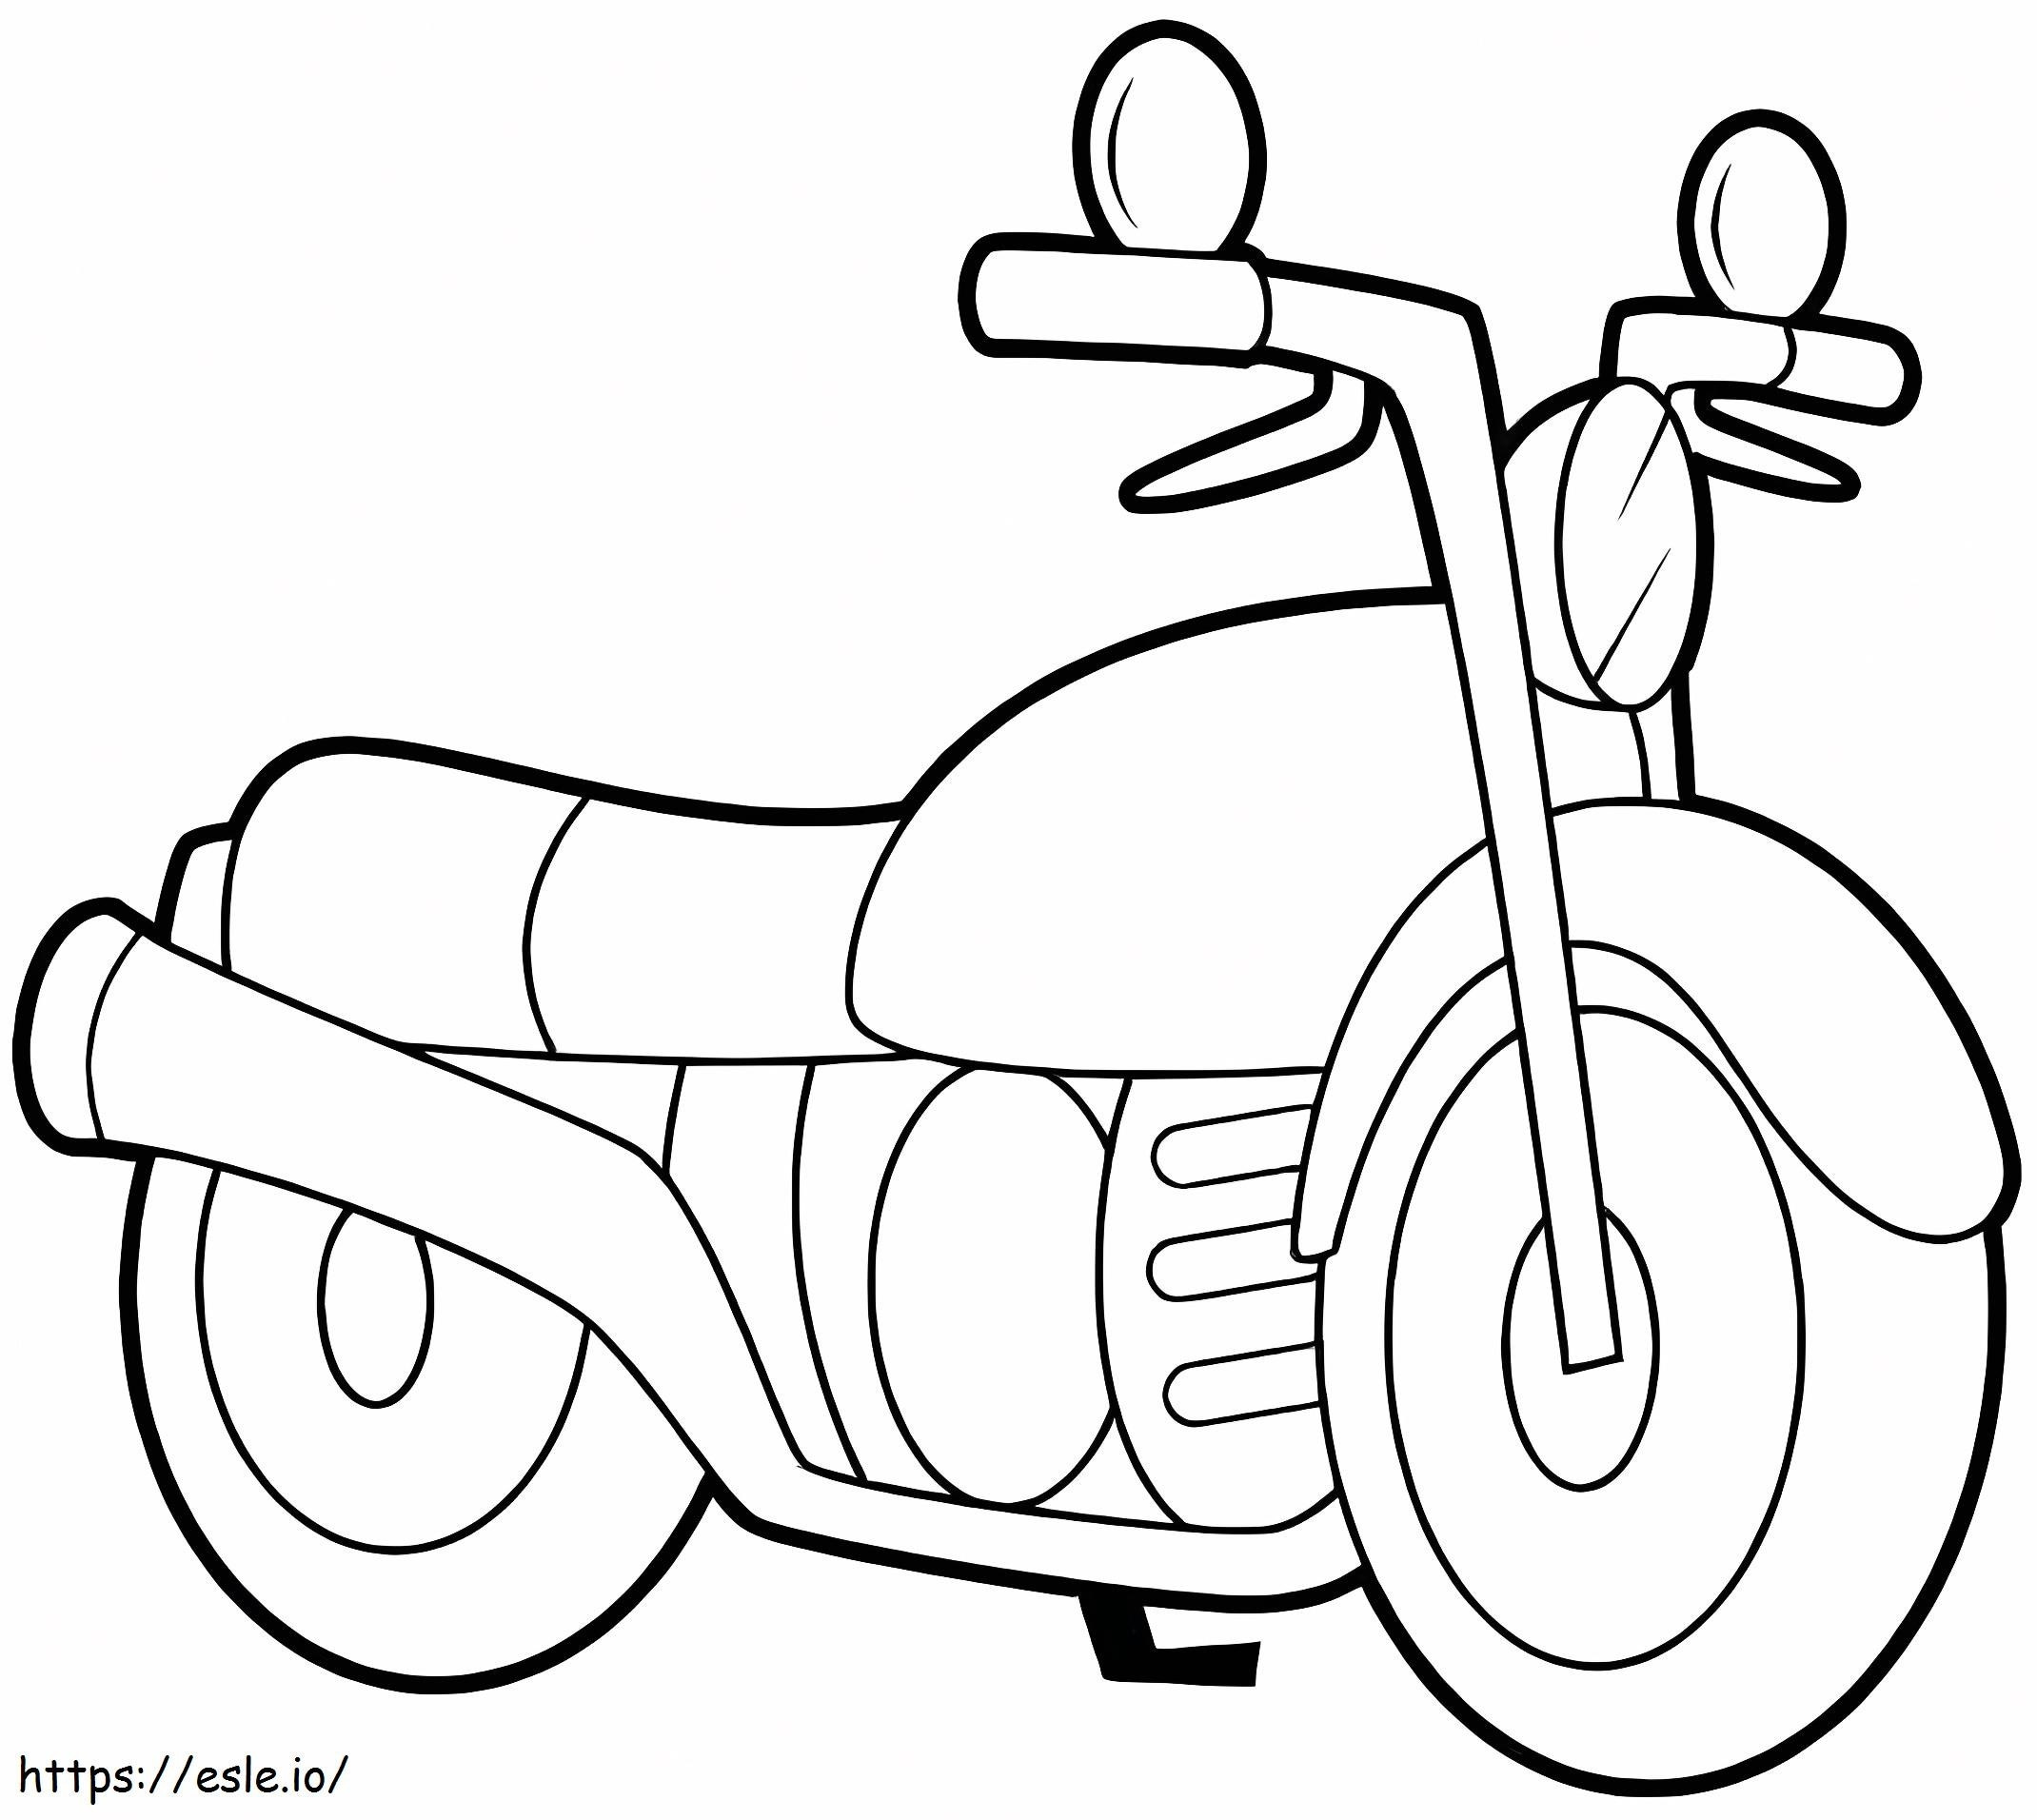 Coloriage Une moto normale à imprimer dessin